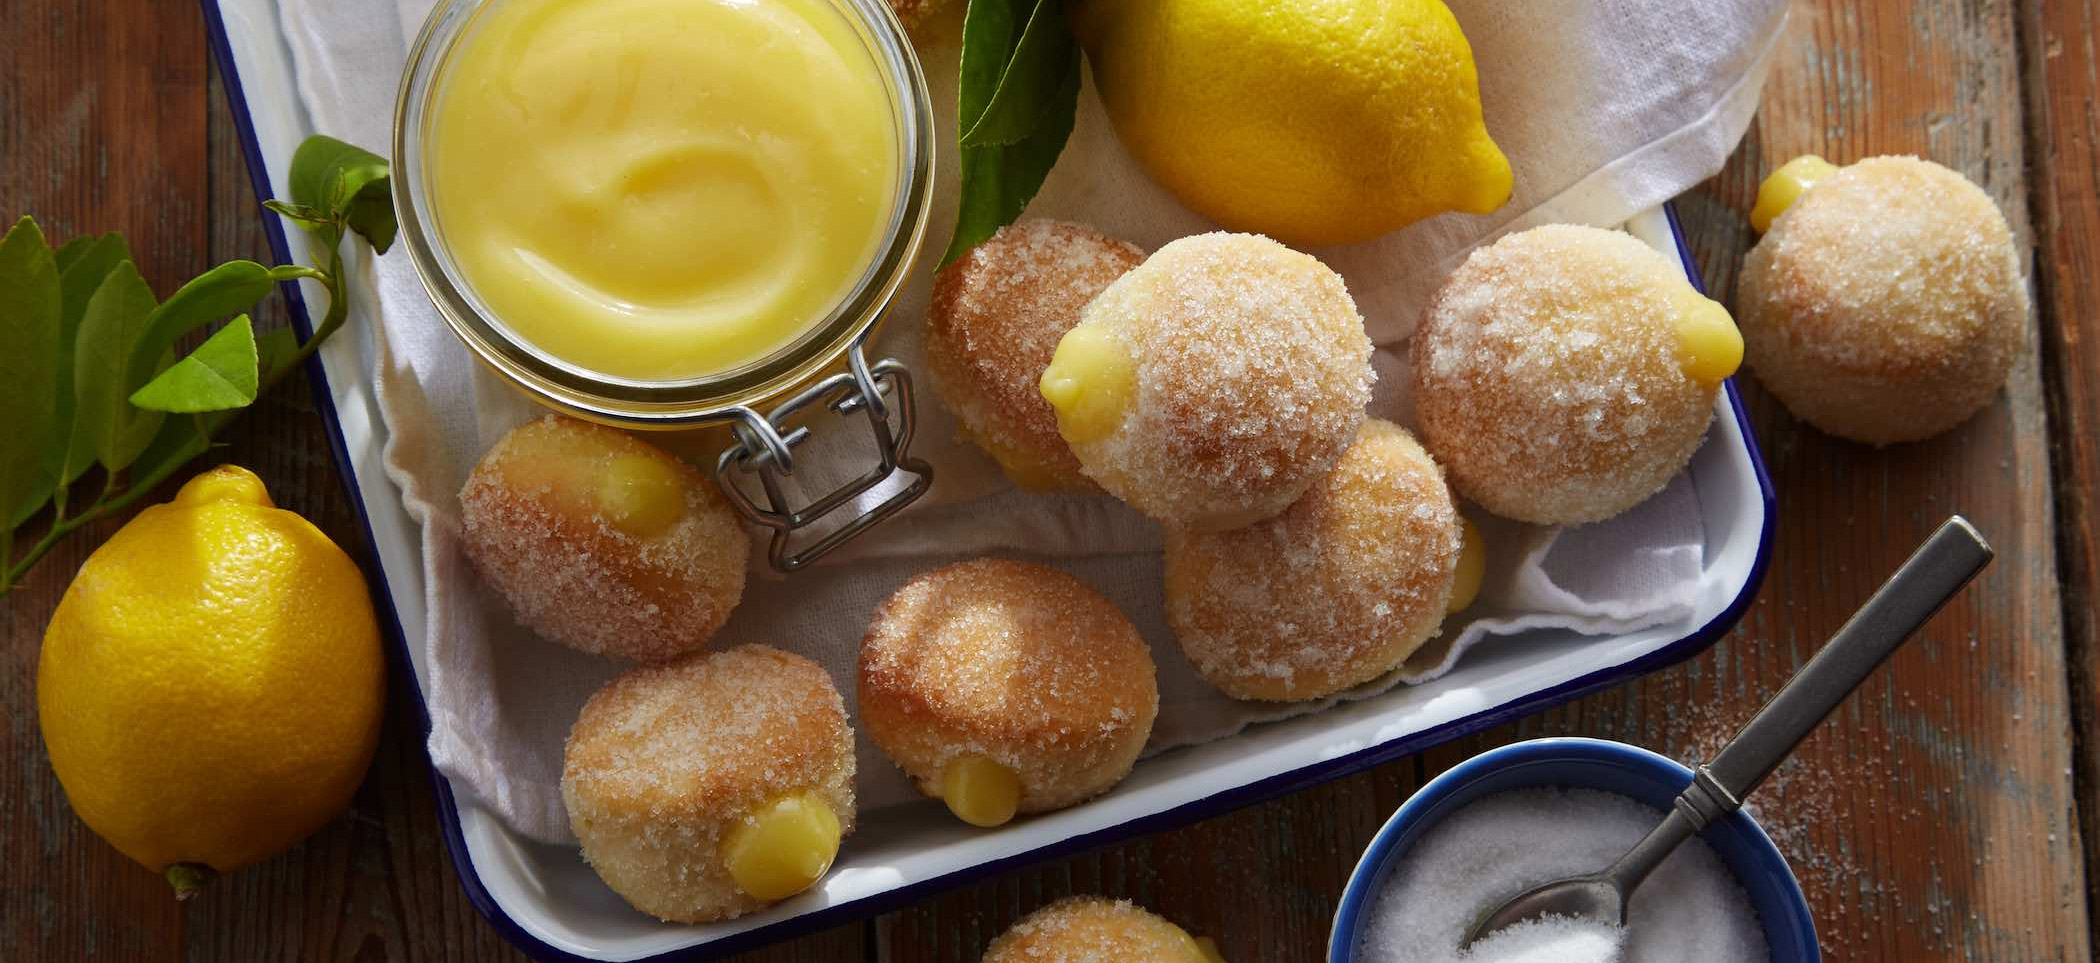 Easy Lemon Baked Donuts